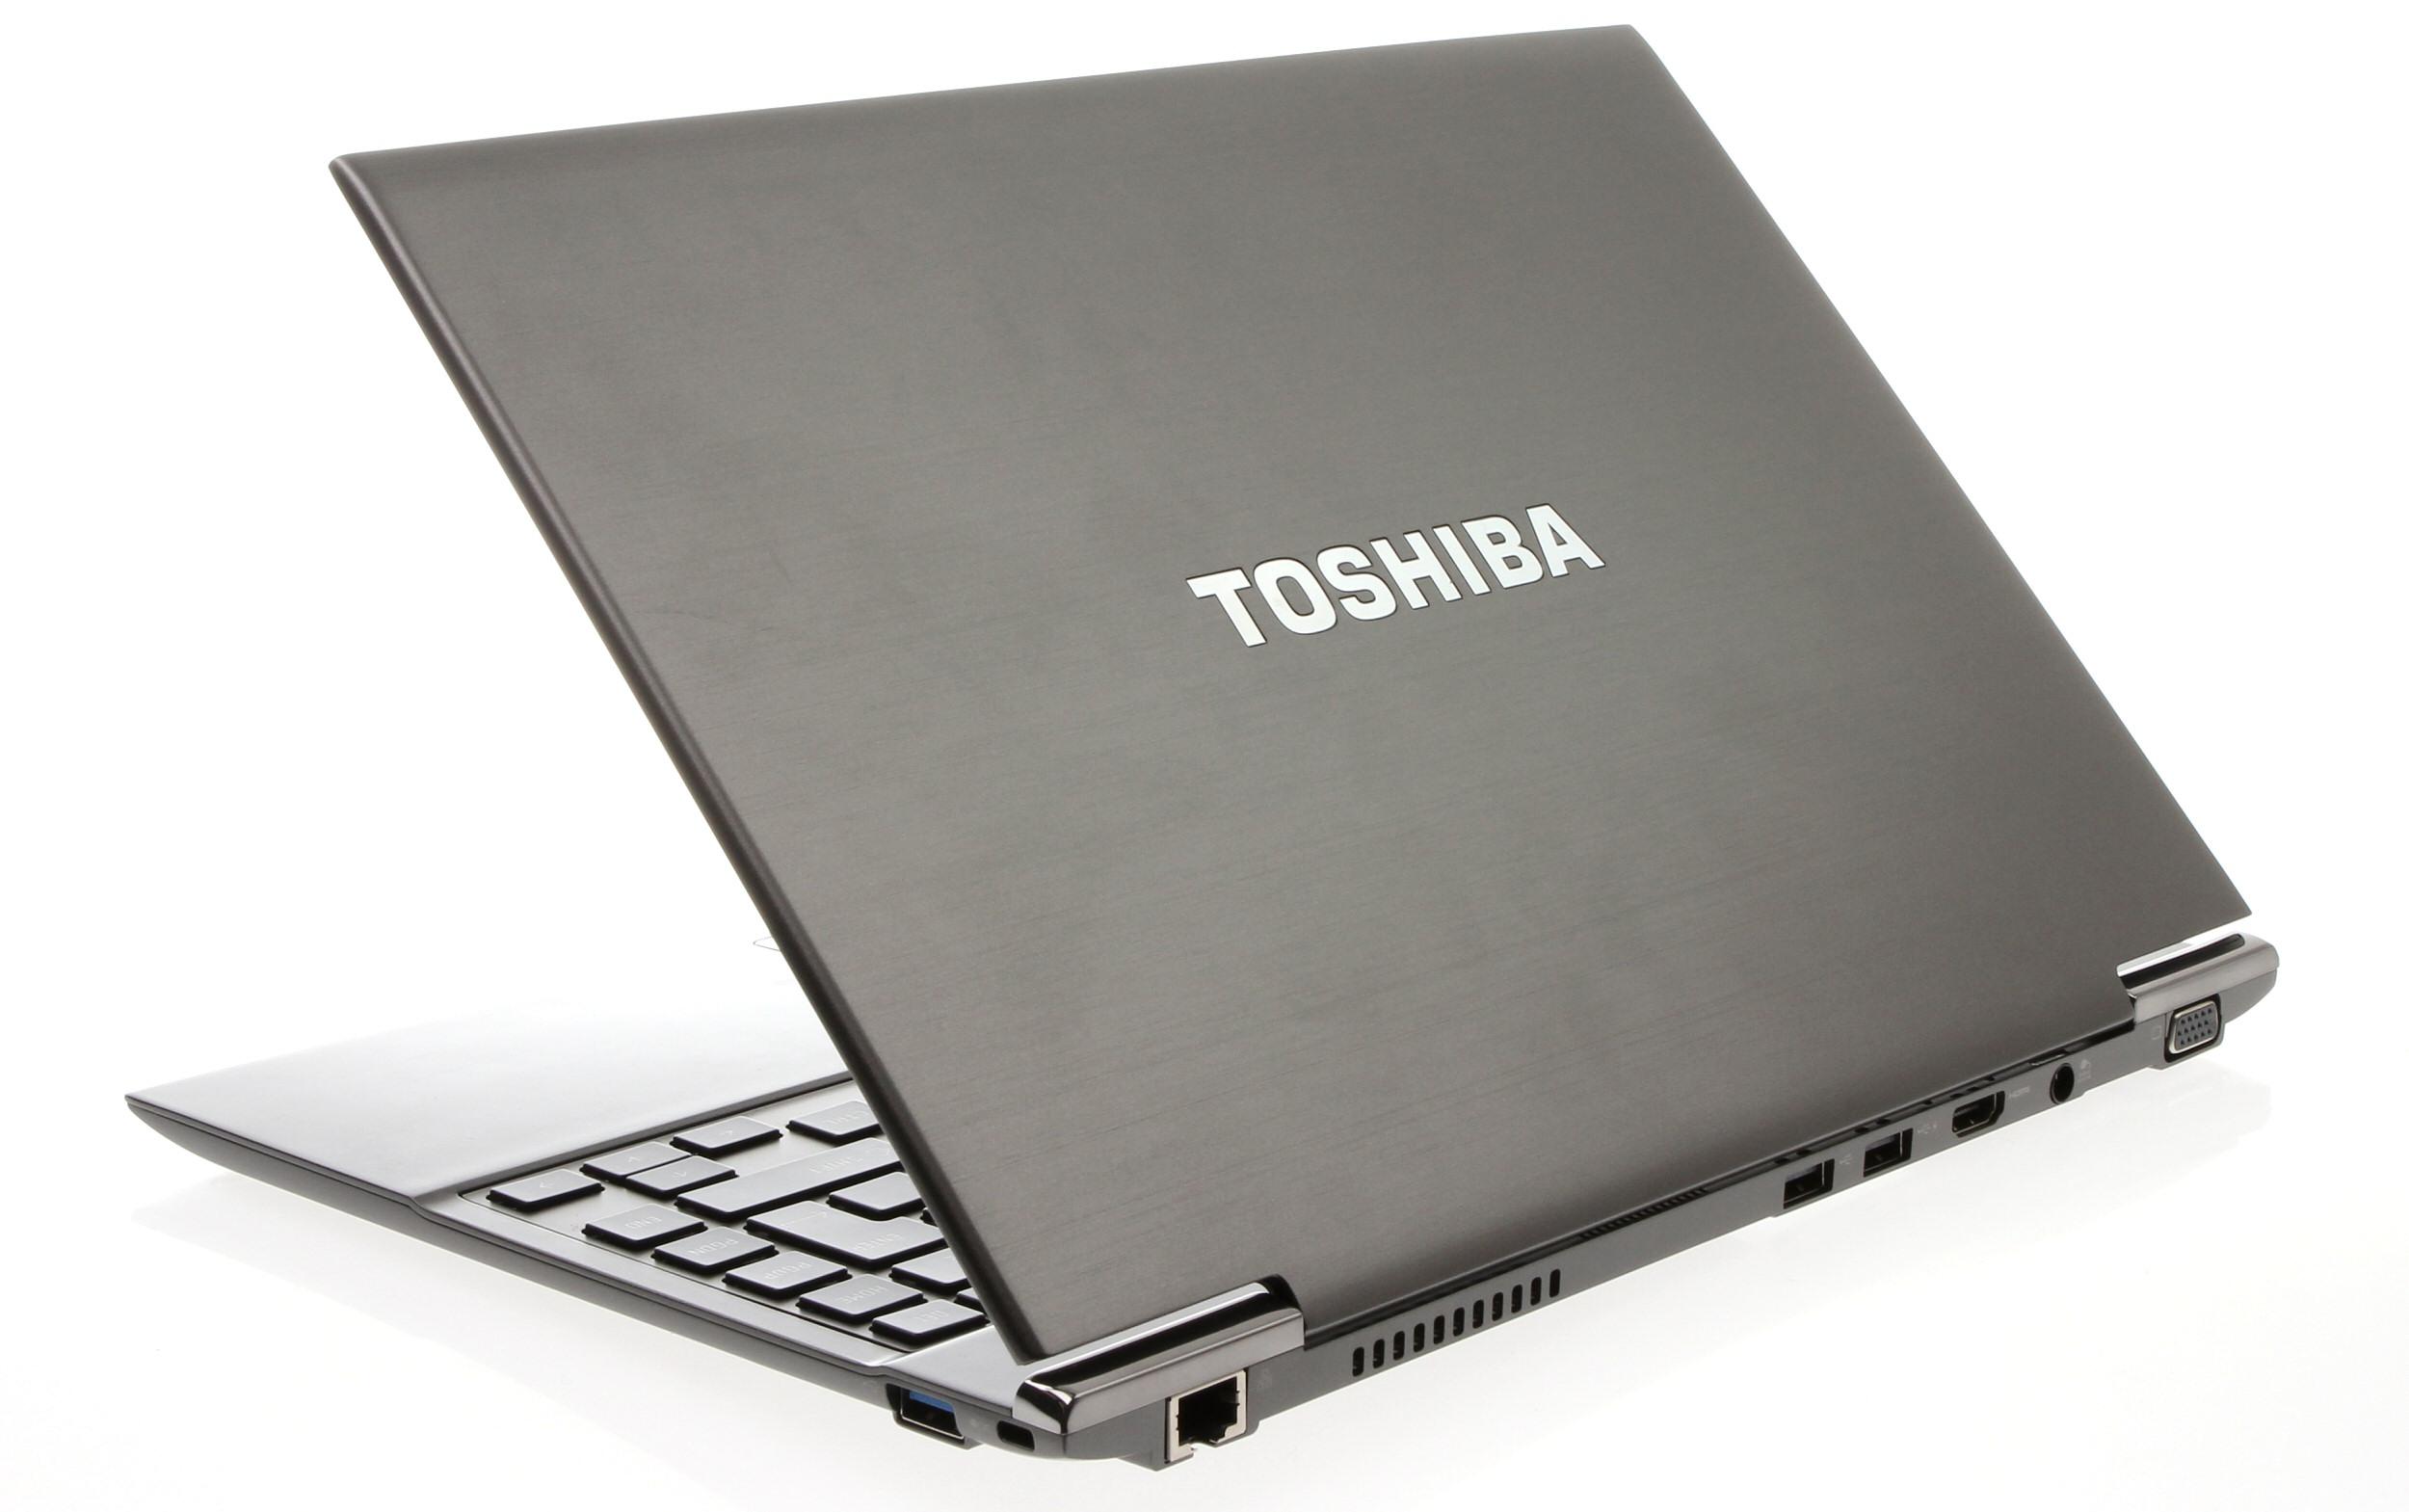 Toshiba Satellite Z930 har også kontakter bak.Foto: Vegar Jansen, Hardware.no